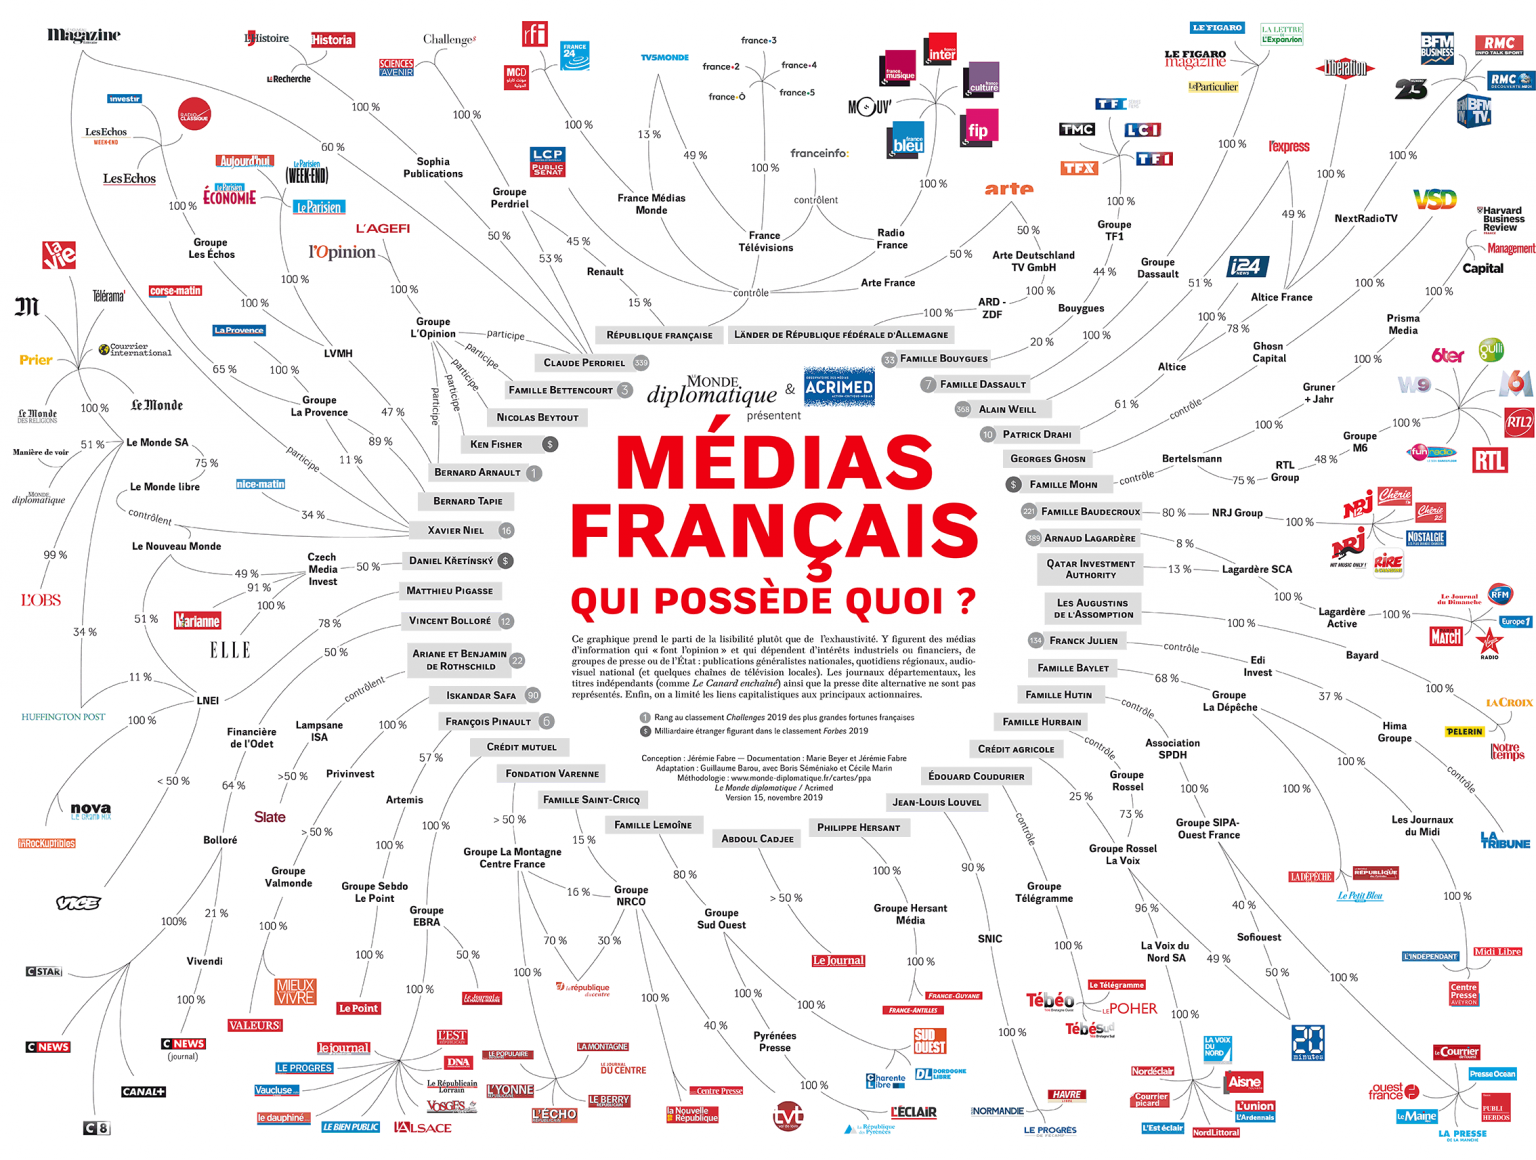 RSF ose se moquer des journalistes mauritaniens pourtant en France ce n'est guère mieux&